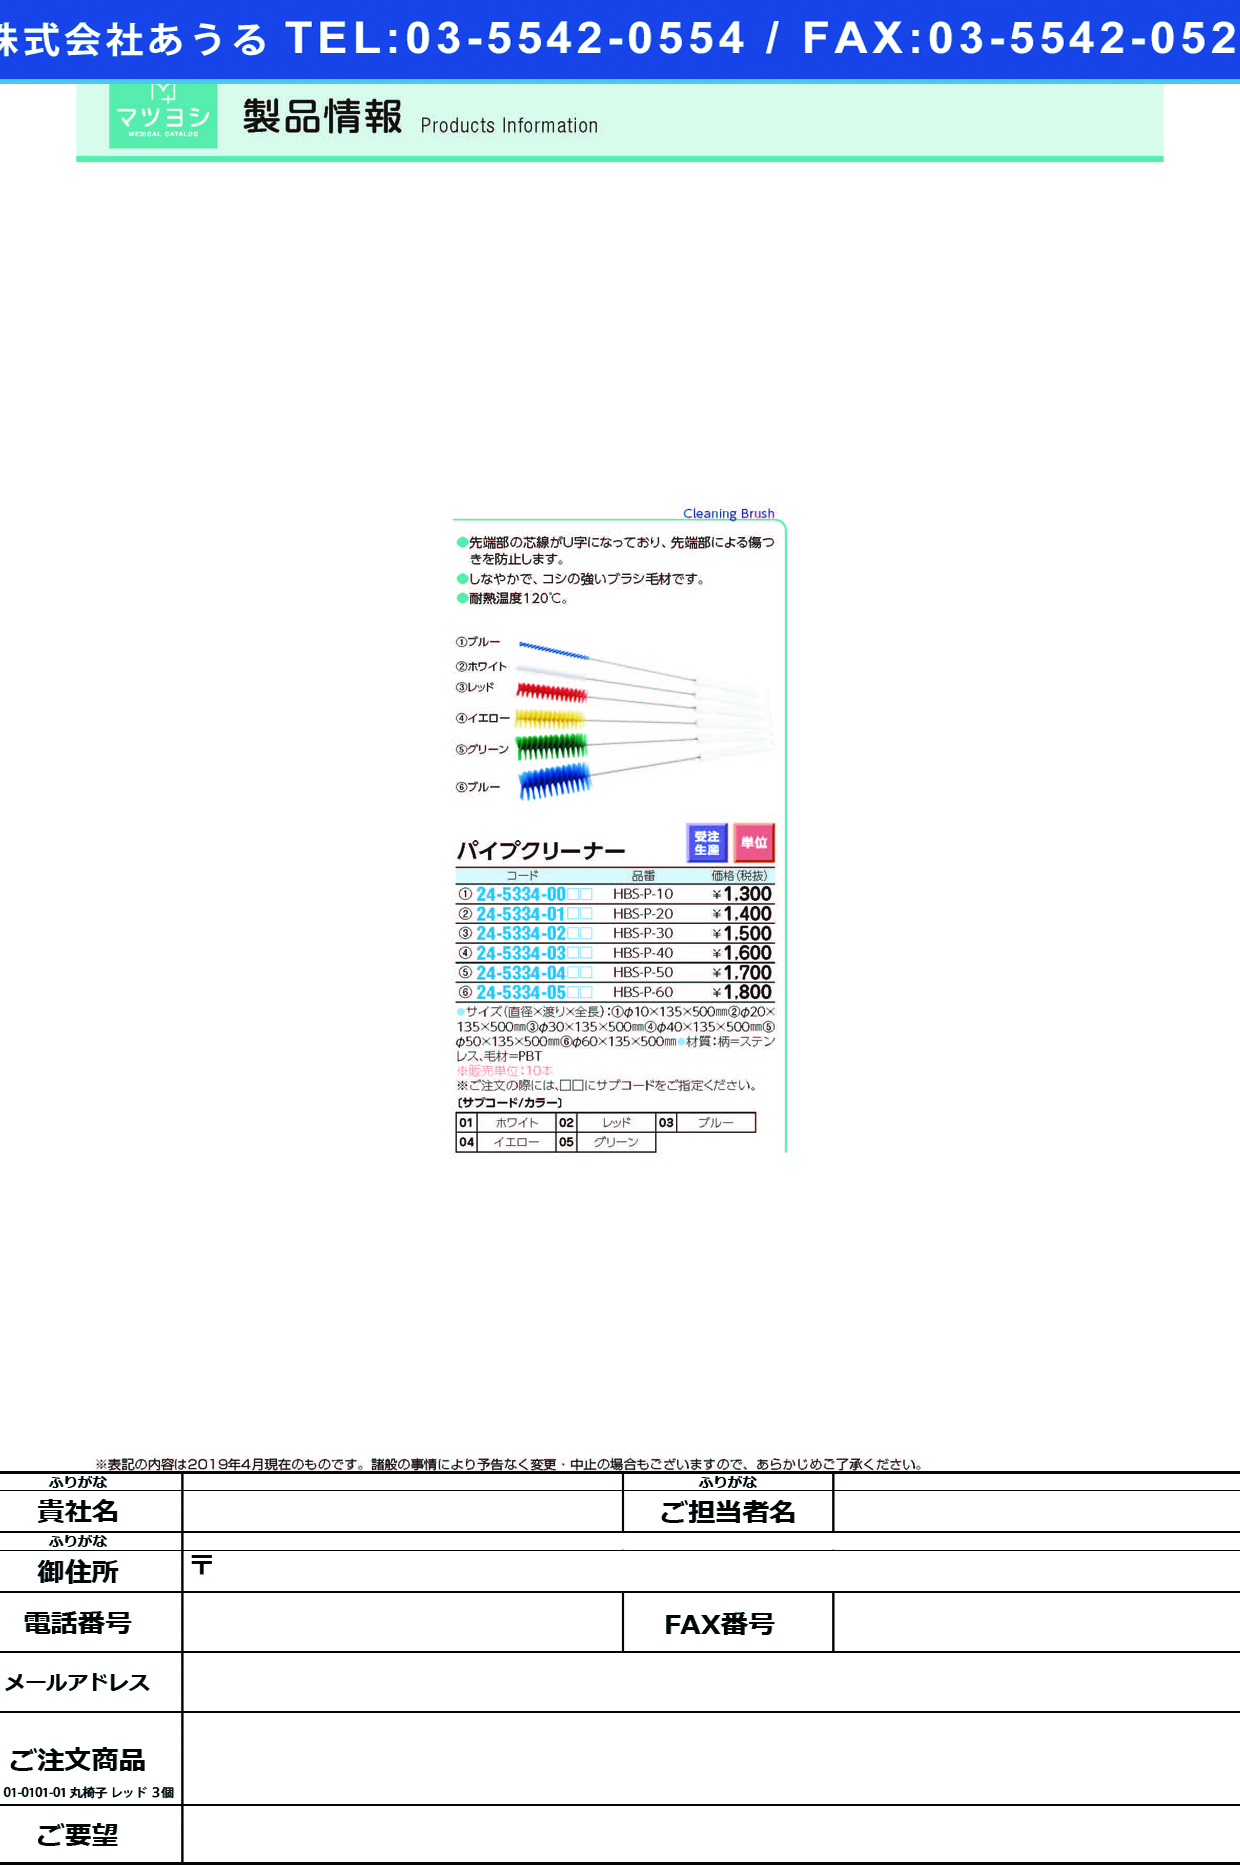 (24-5334-01)パイプクリーナー HBS-P-20 ﾊﾟｲﾌﾟｸﾘｰﾅｰ グリーン【10本単位】【2019年カタログ商品】